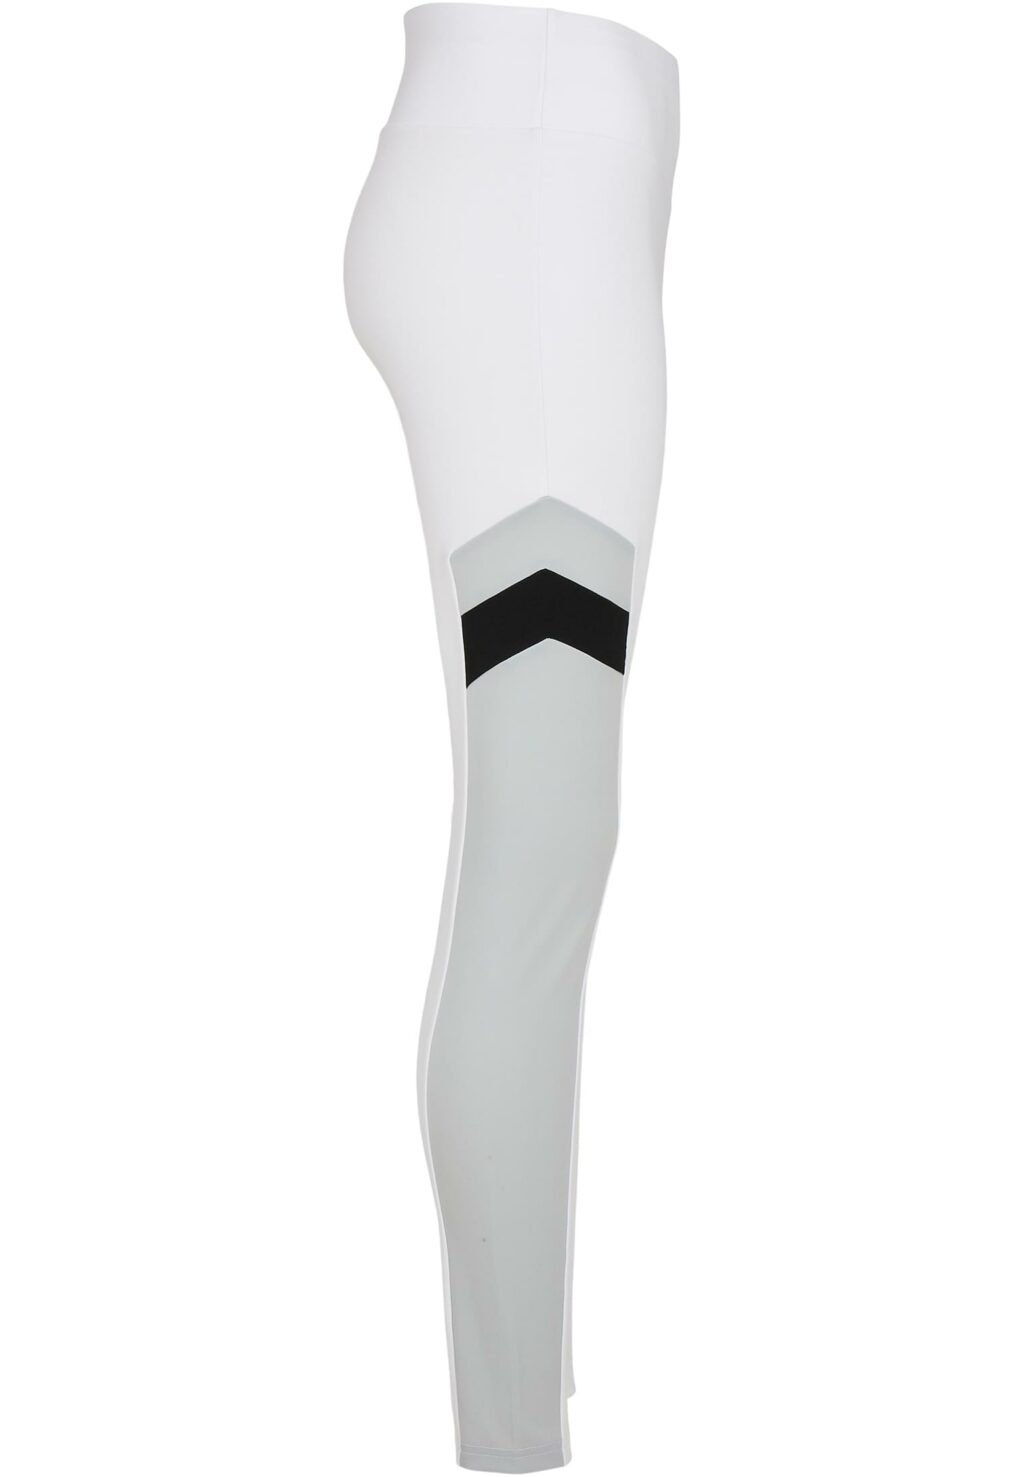 Ladies Starter Highwaist Sports Leggings white/black ST162